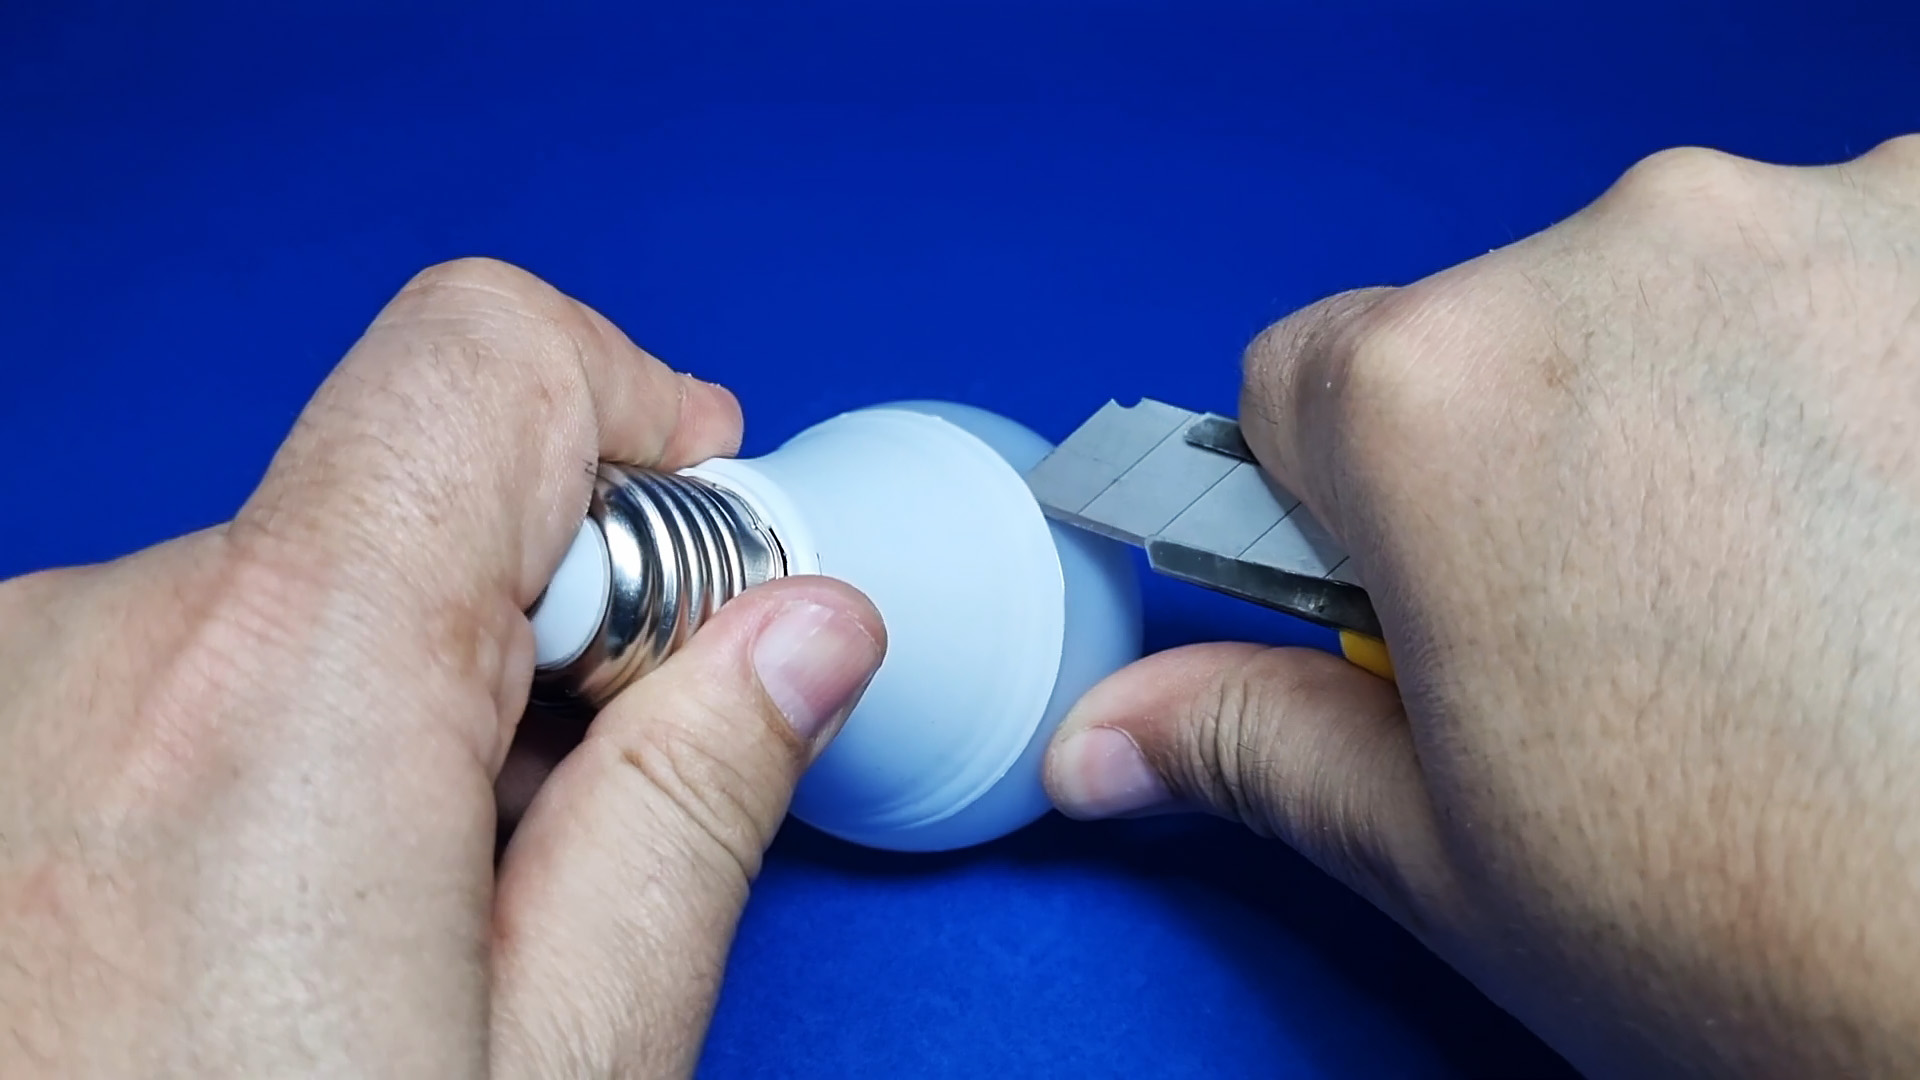 Как сделать регулировку яркости в светодиодной лампе